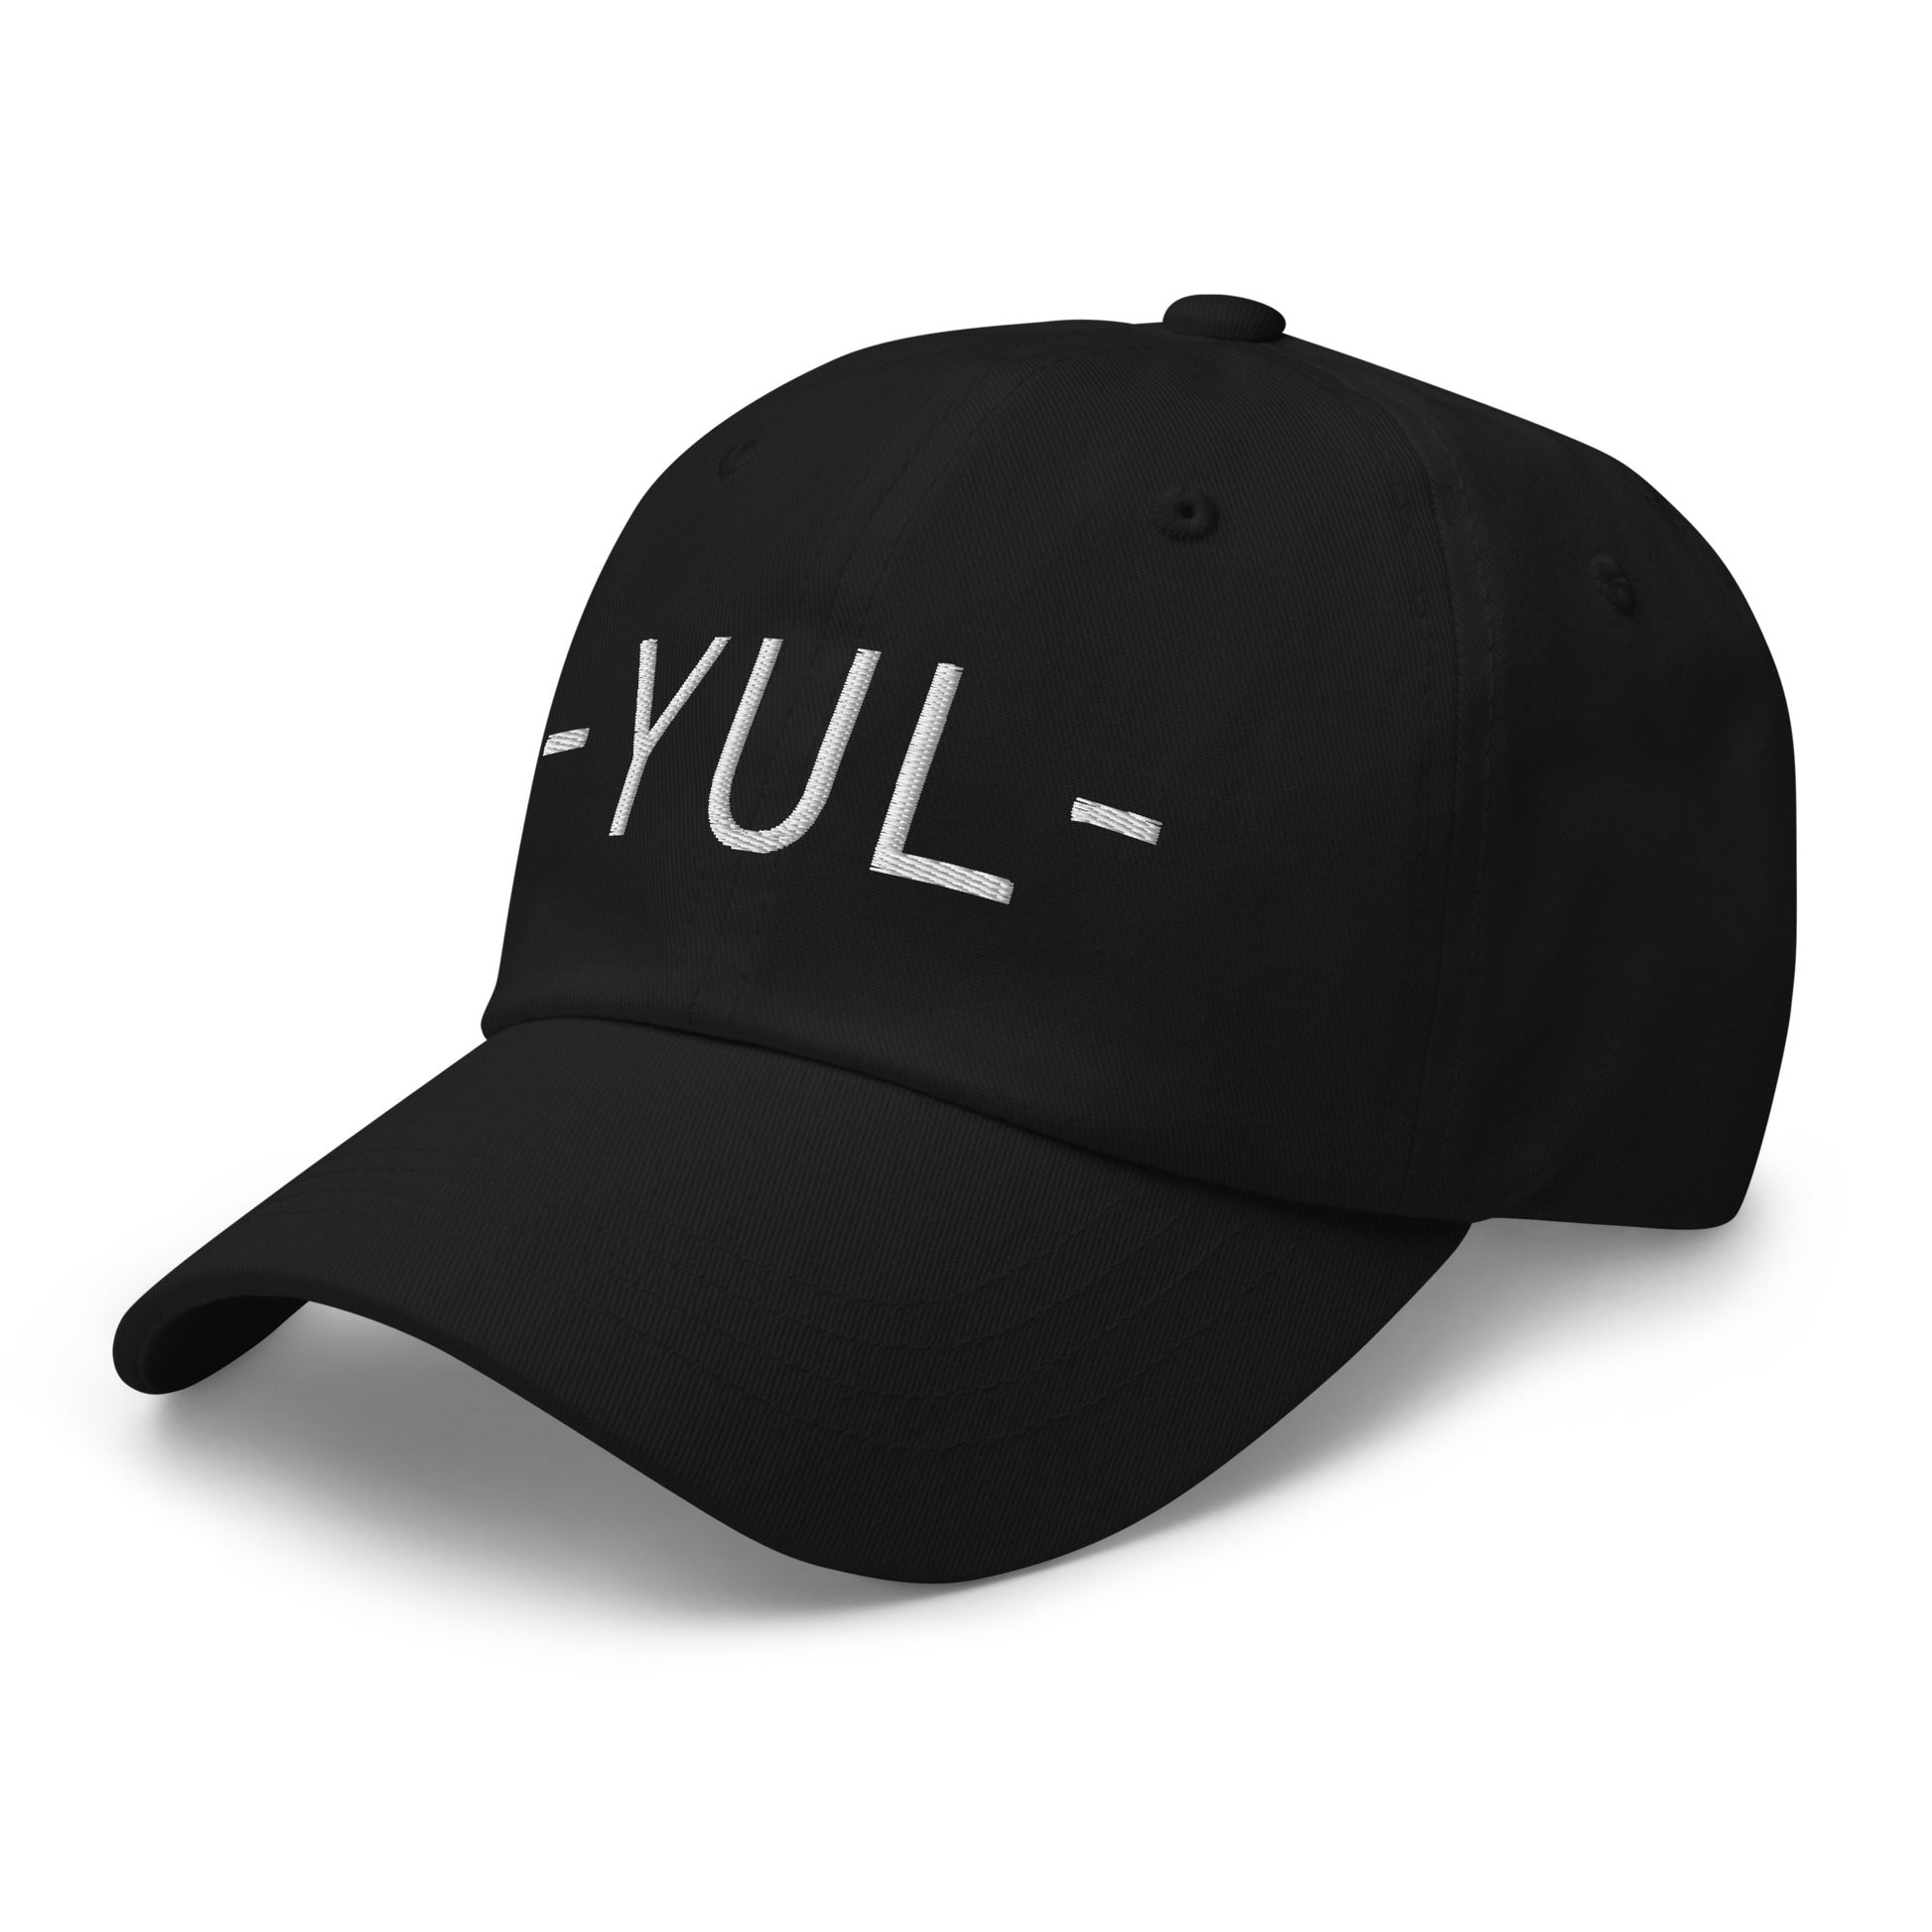 Souvenir Baseball Cap - White • YUL Montreal • YHM Designs - Image 13